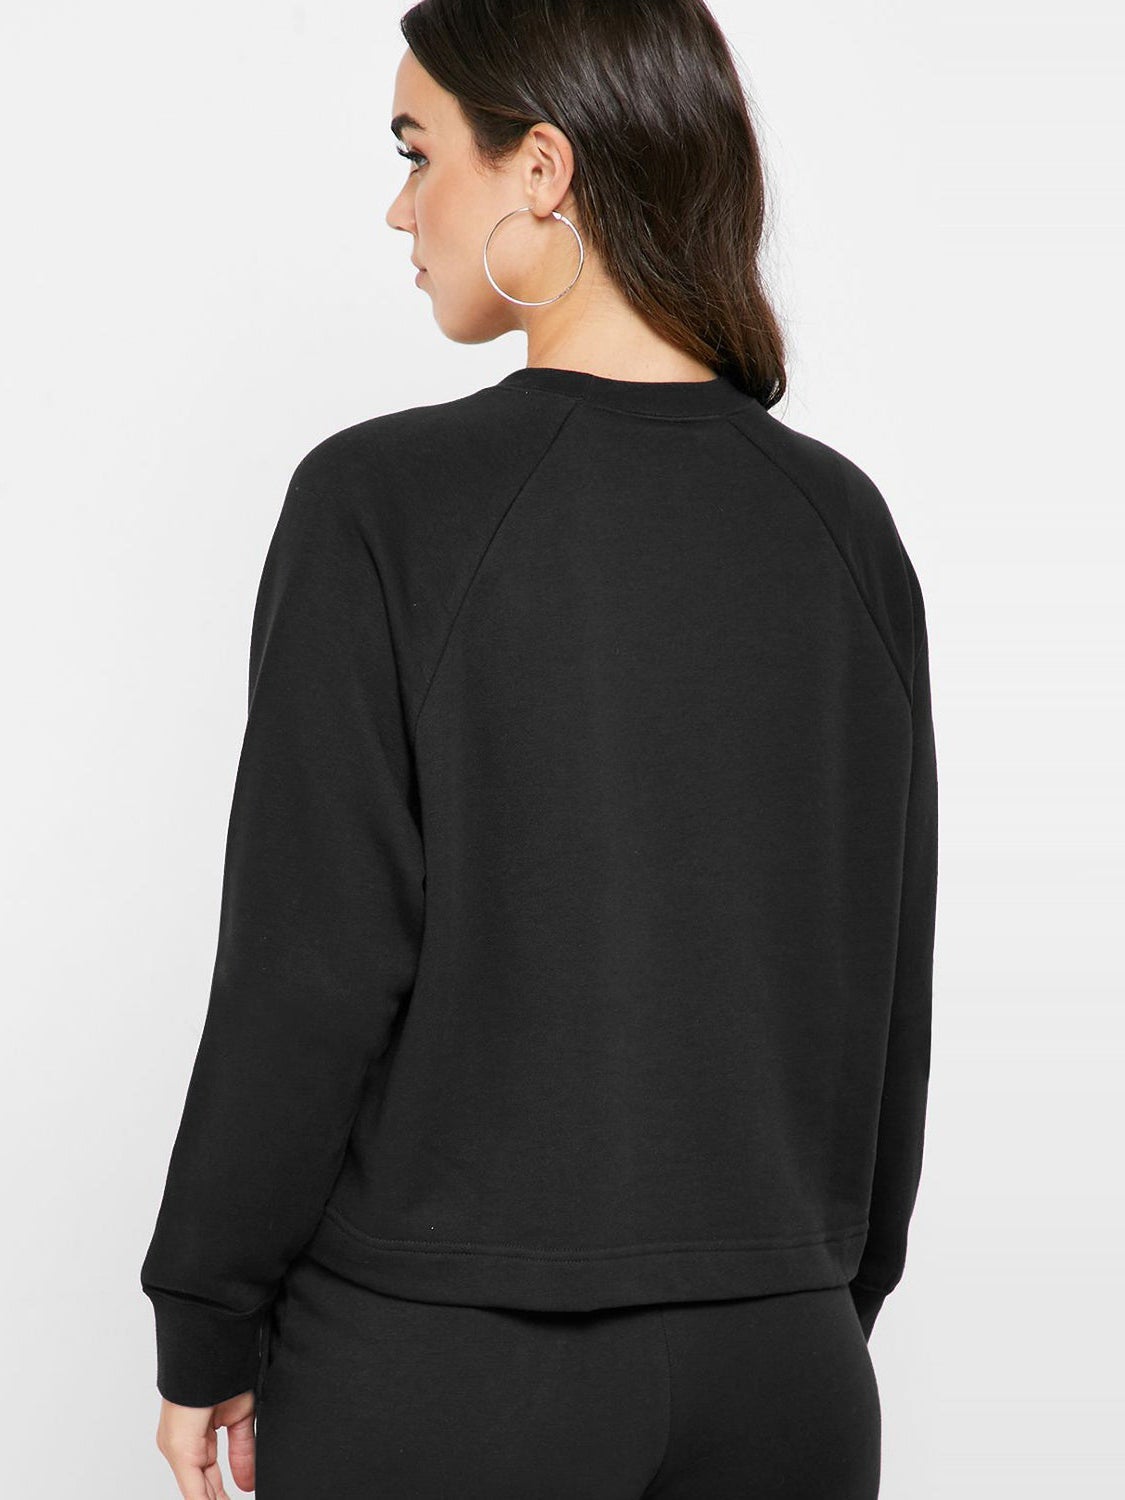 NK Terry Fleece Side Lace Up Sweatshirt For Women-Black-RT883